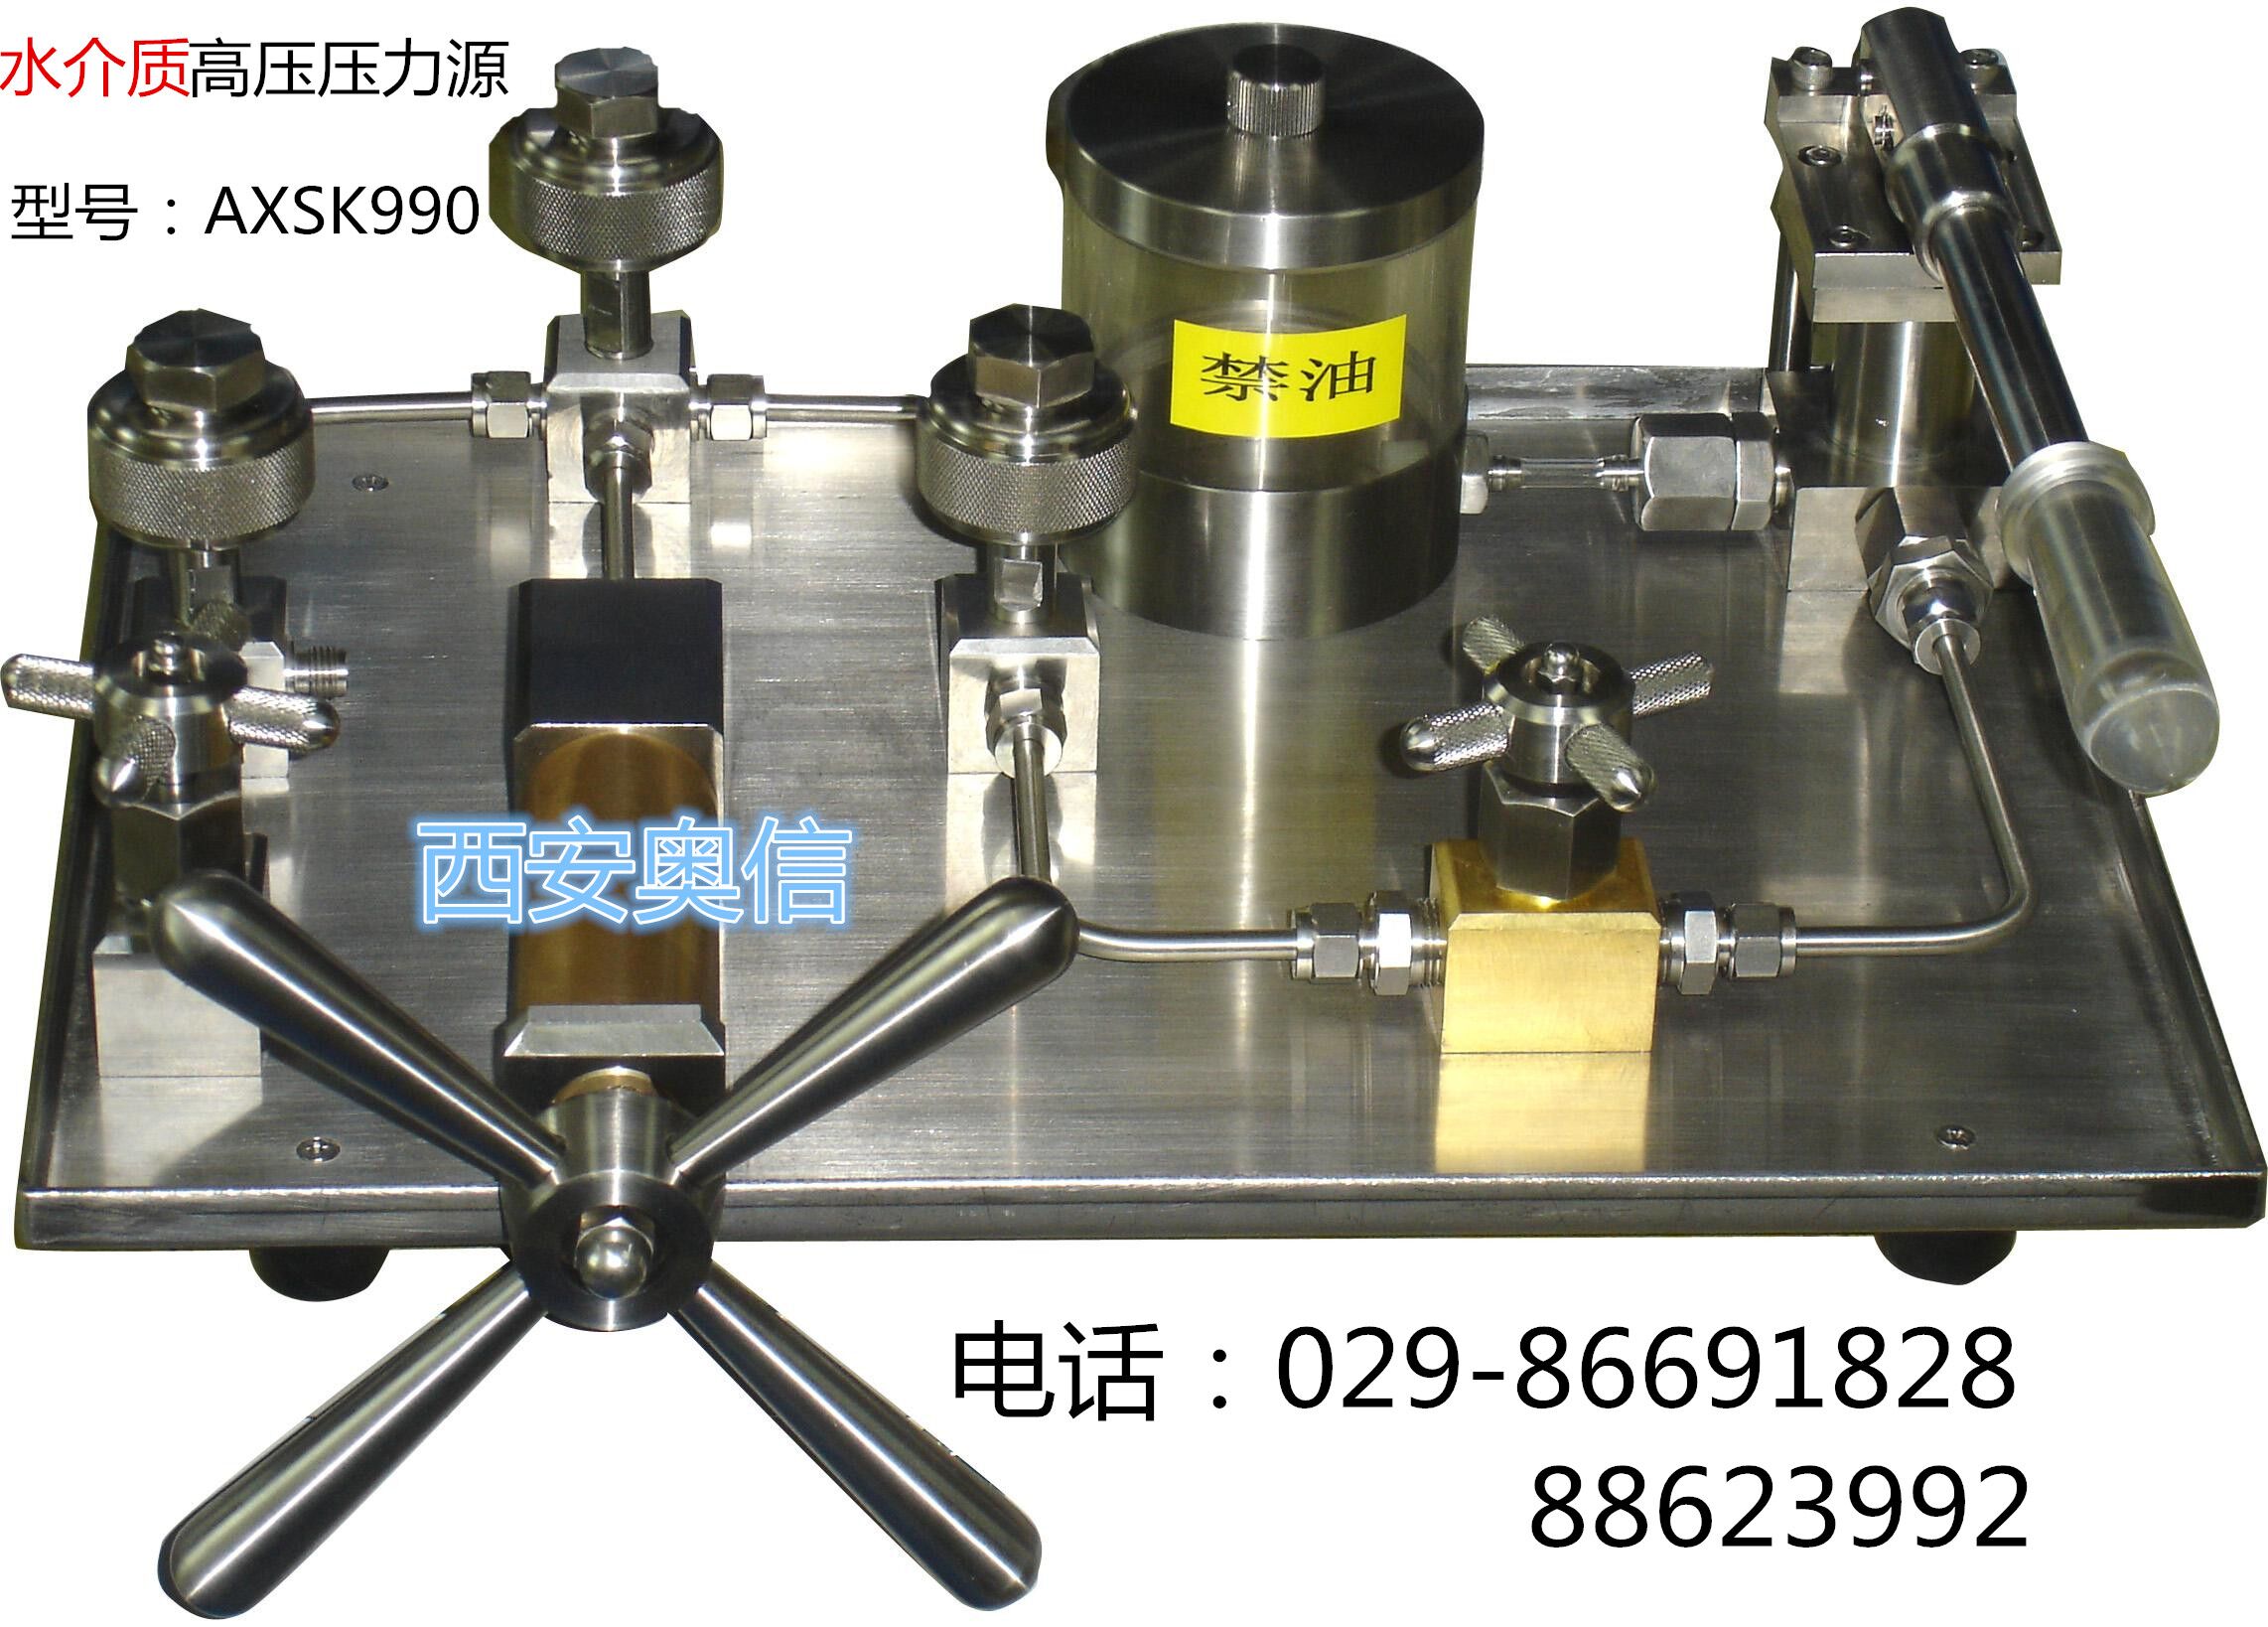  西安压力校验仪表装置 AXSK990水介质高压压力源 